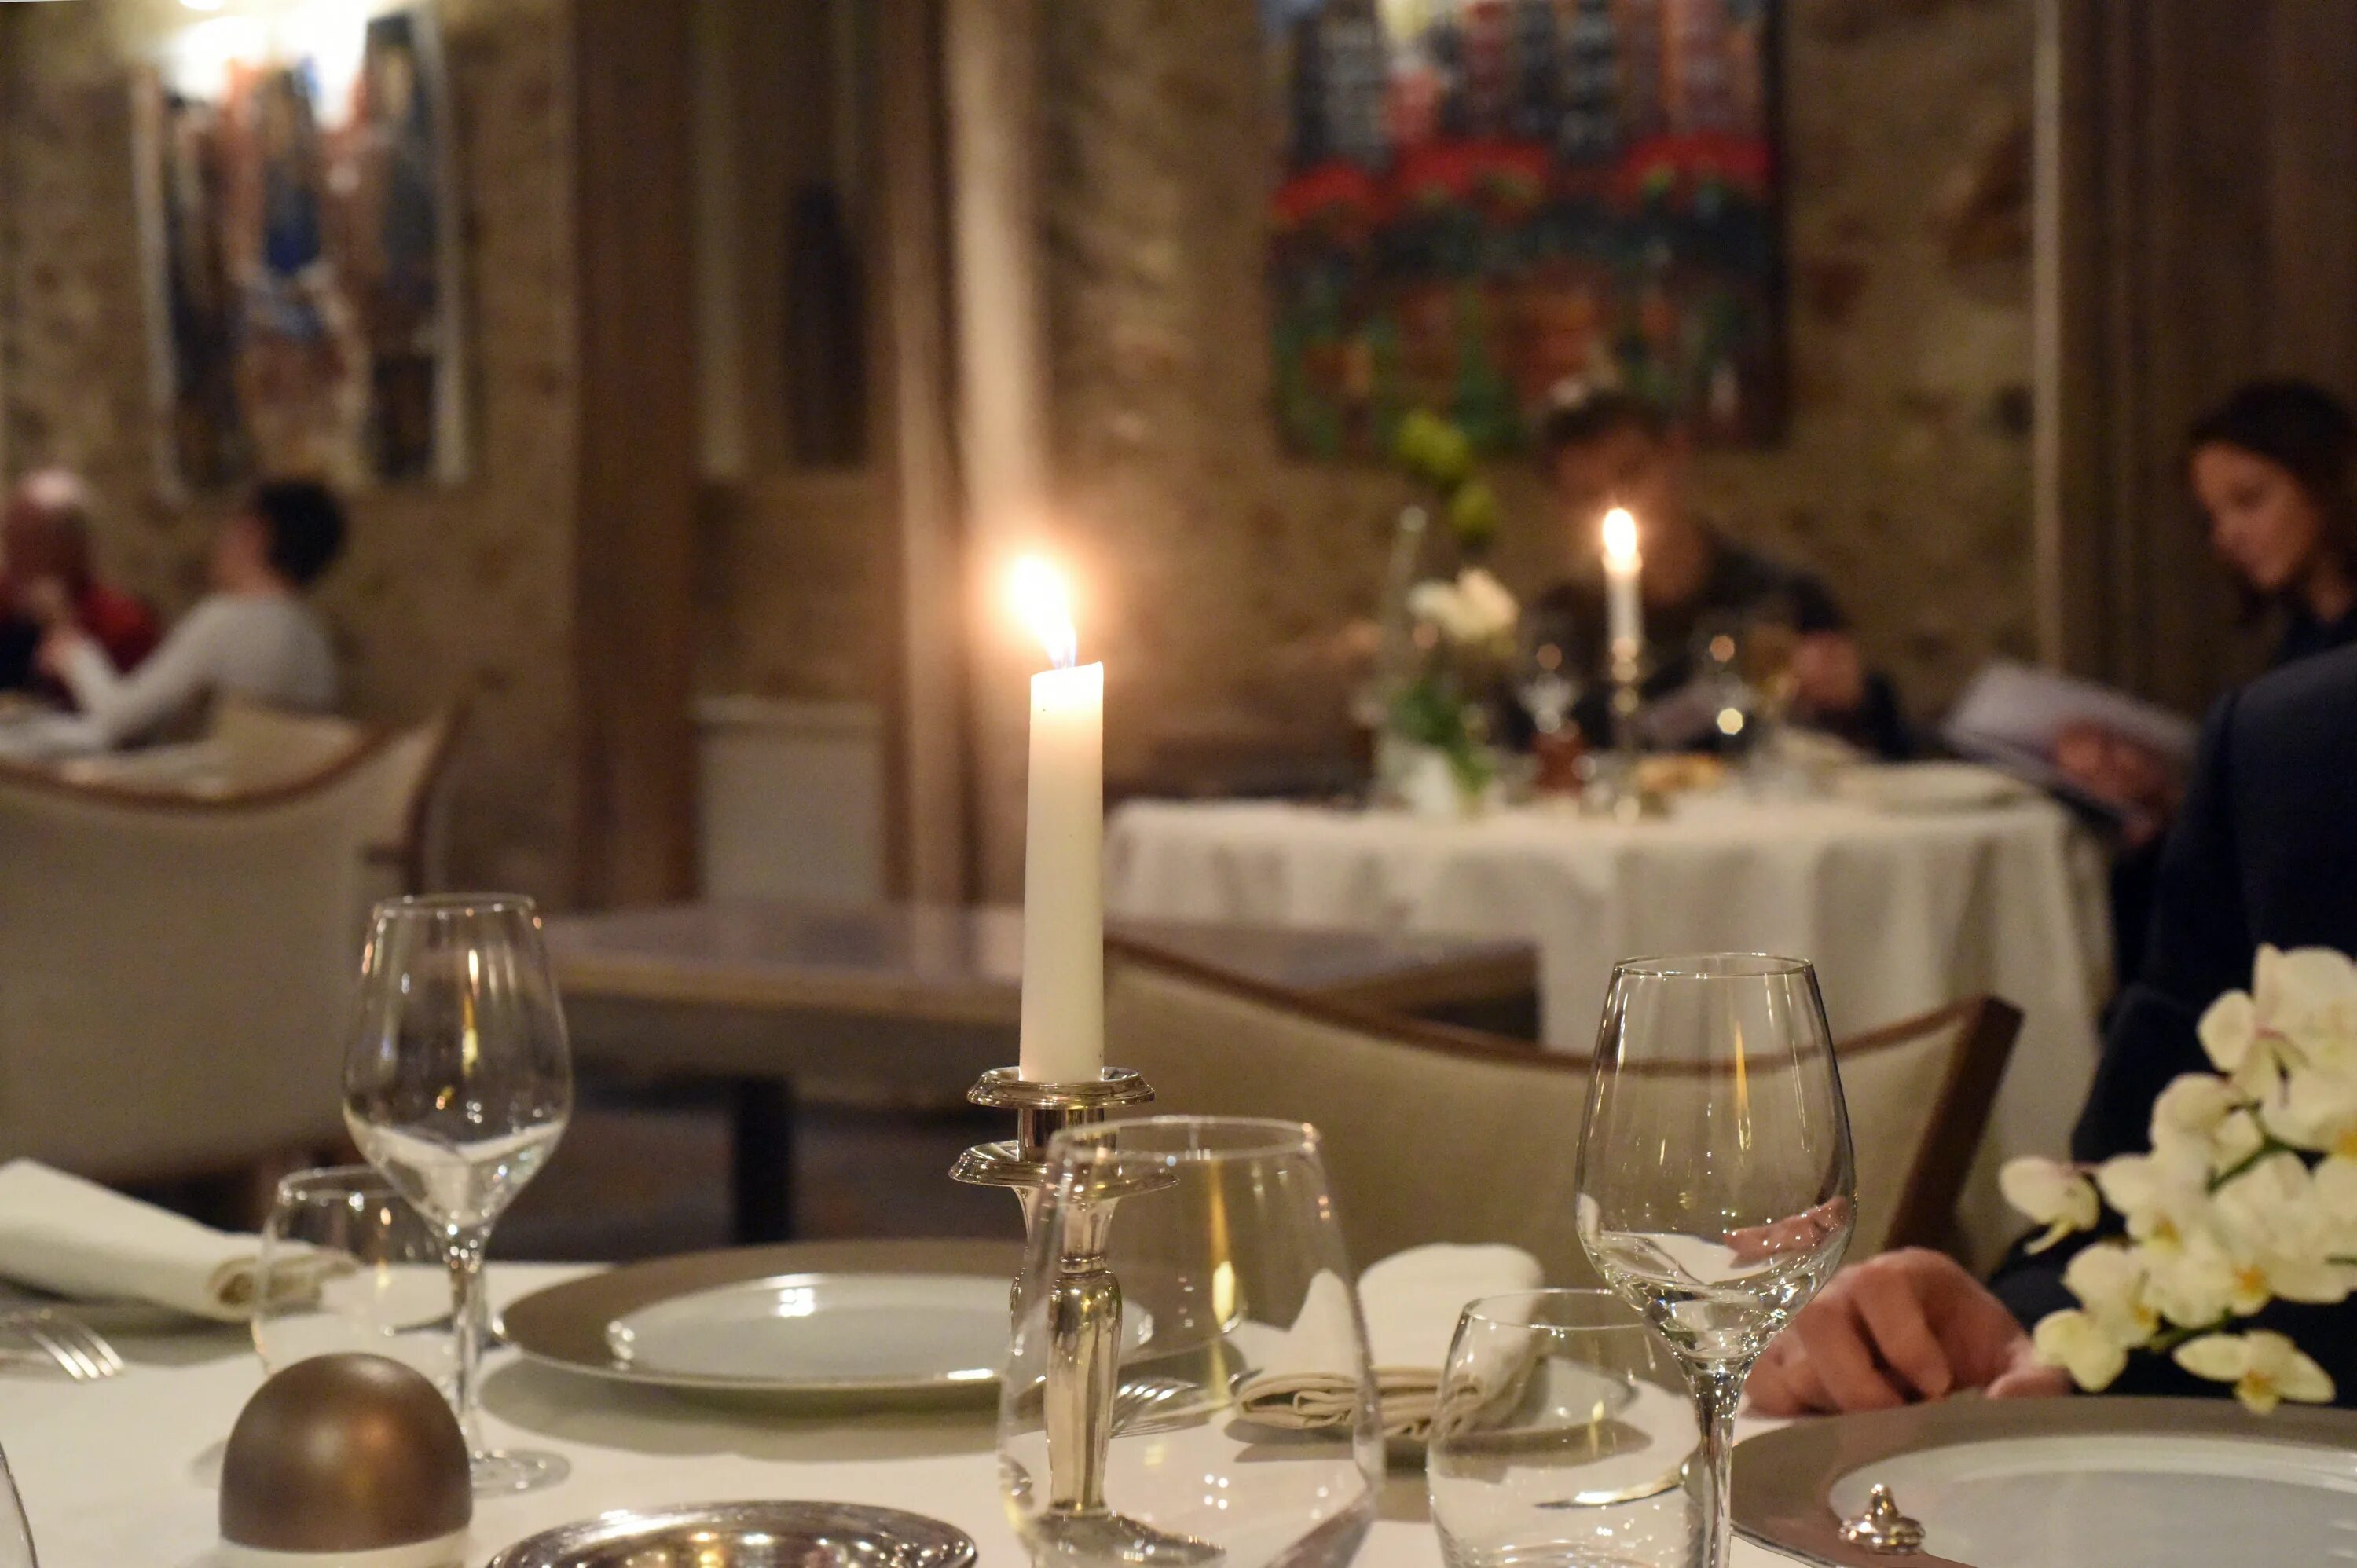 Столик в ресторане. Сервировка стола в ресторане. Романтический ужин в ресторане. Свечи в ресторане.